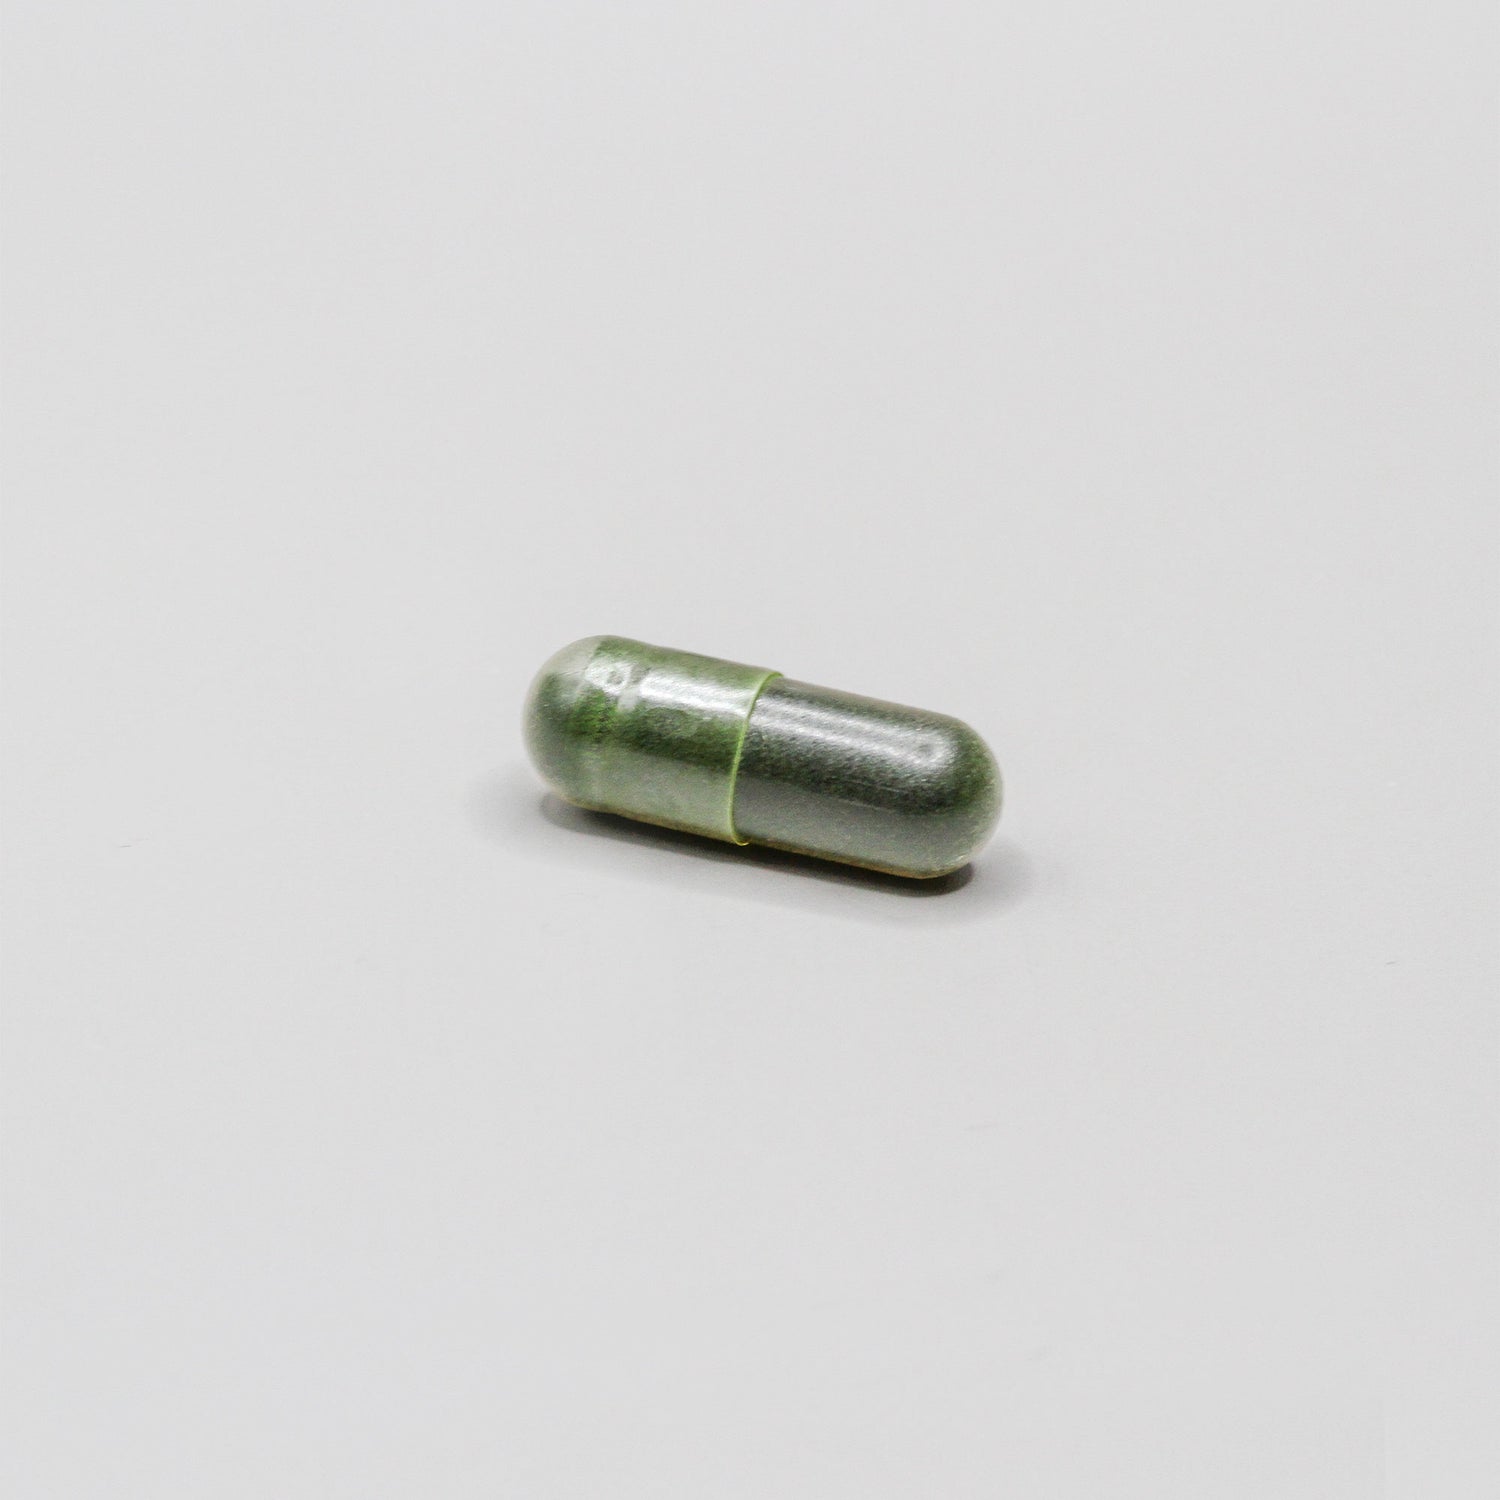 Dark green pill